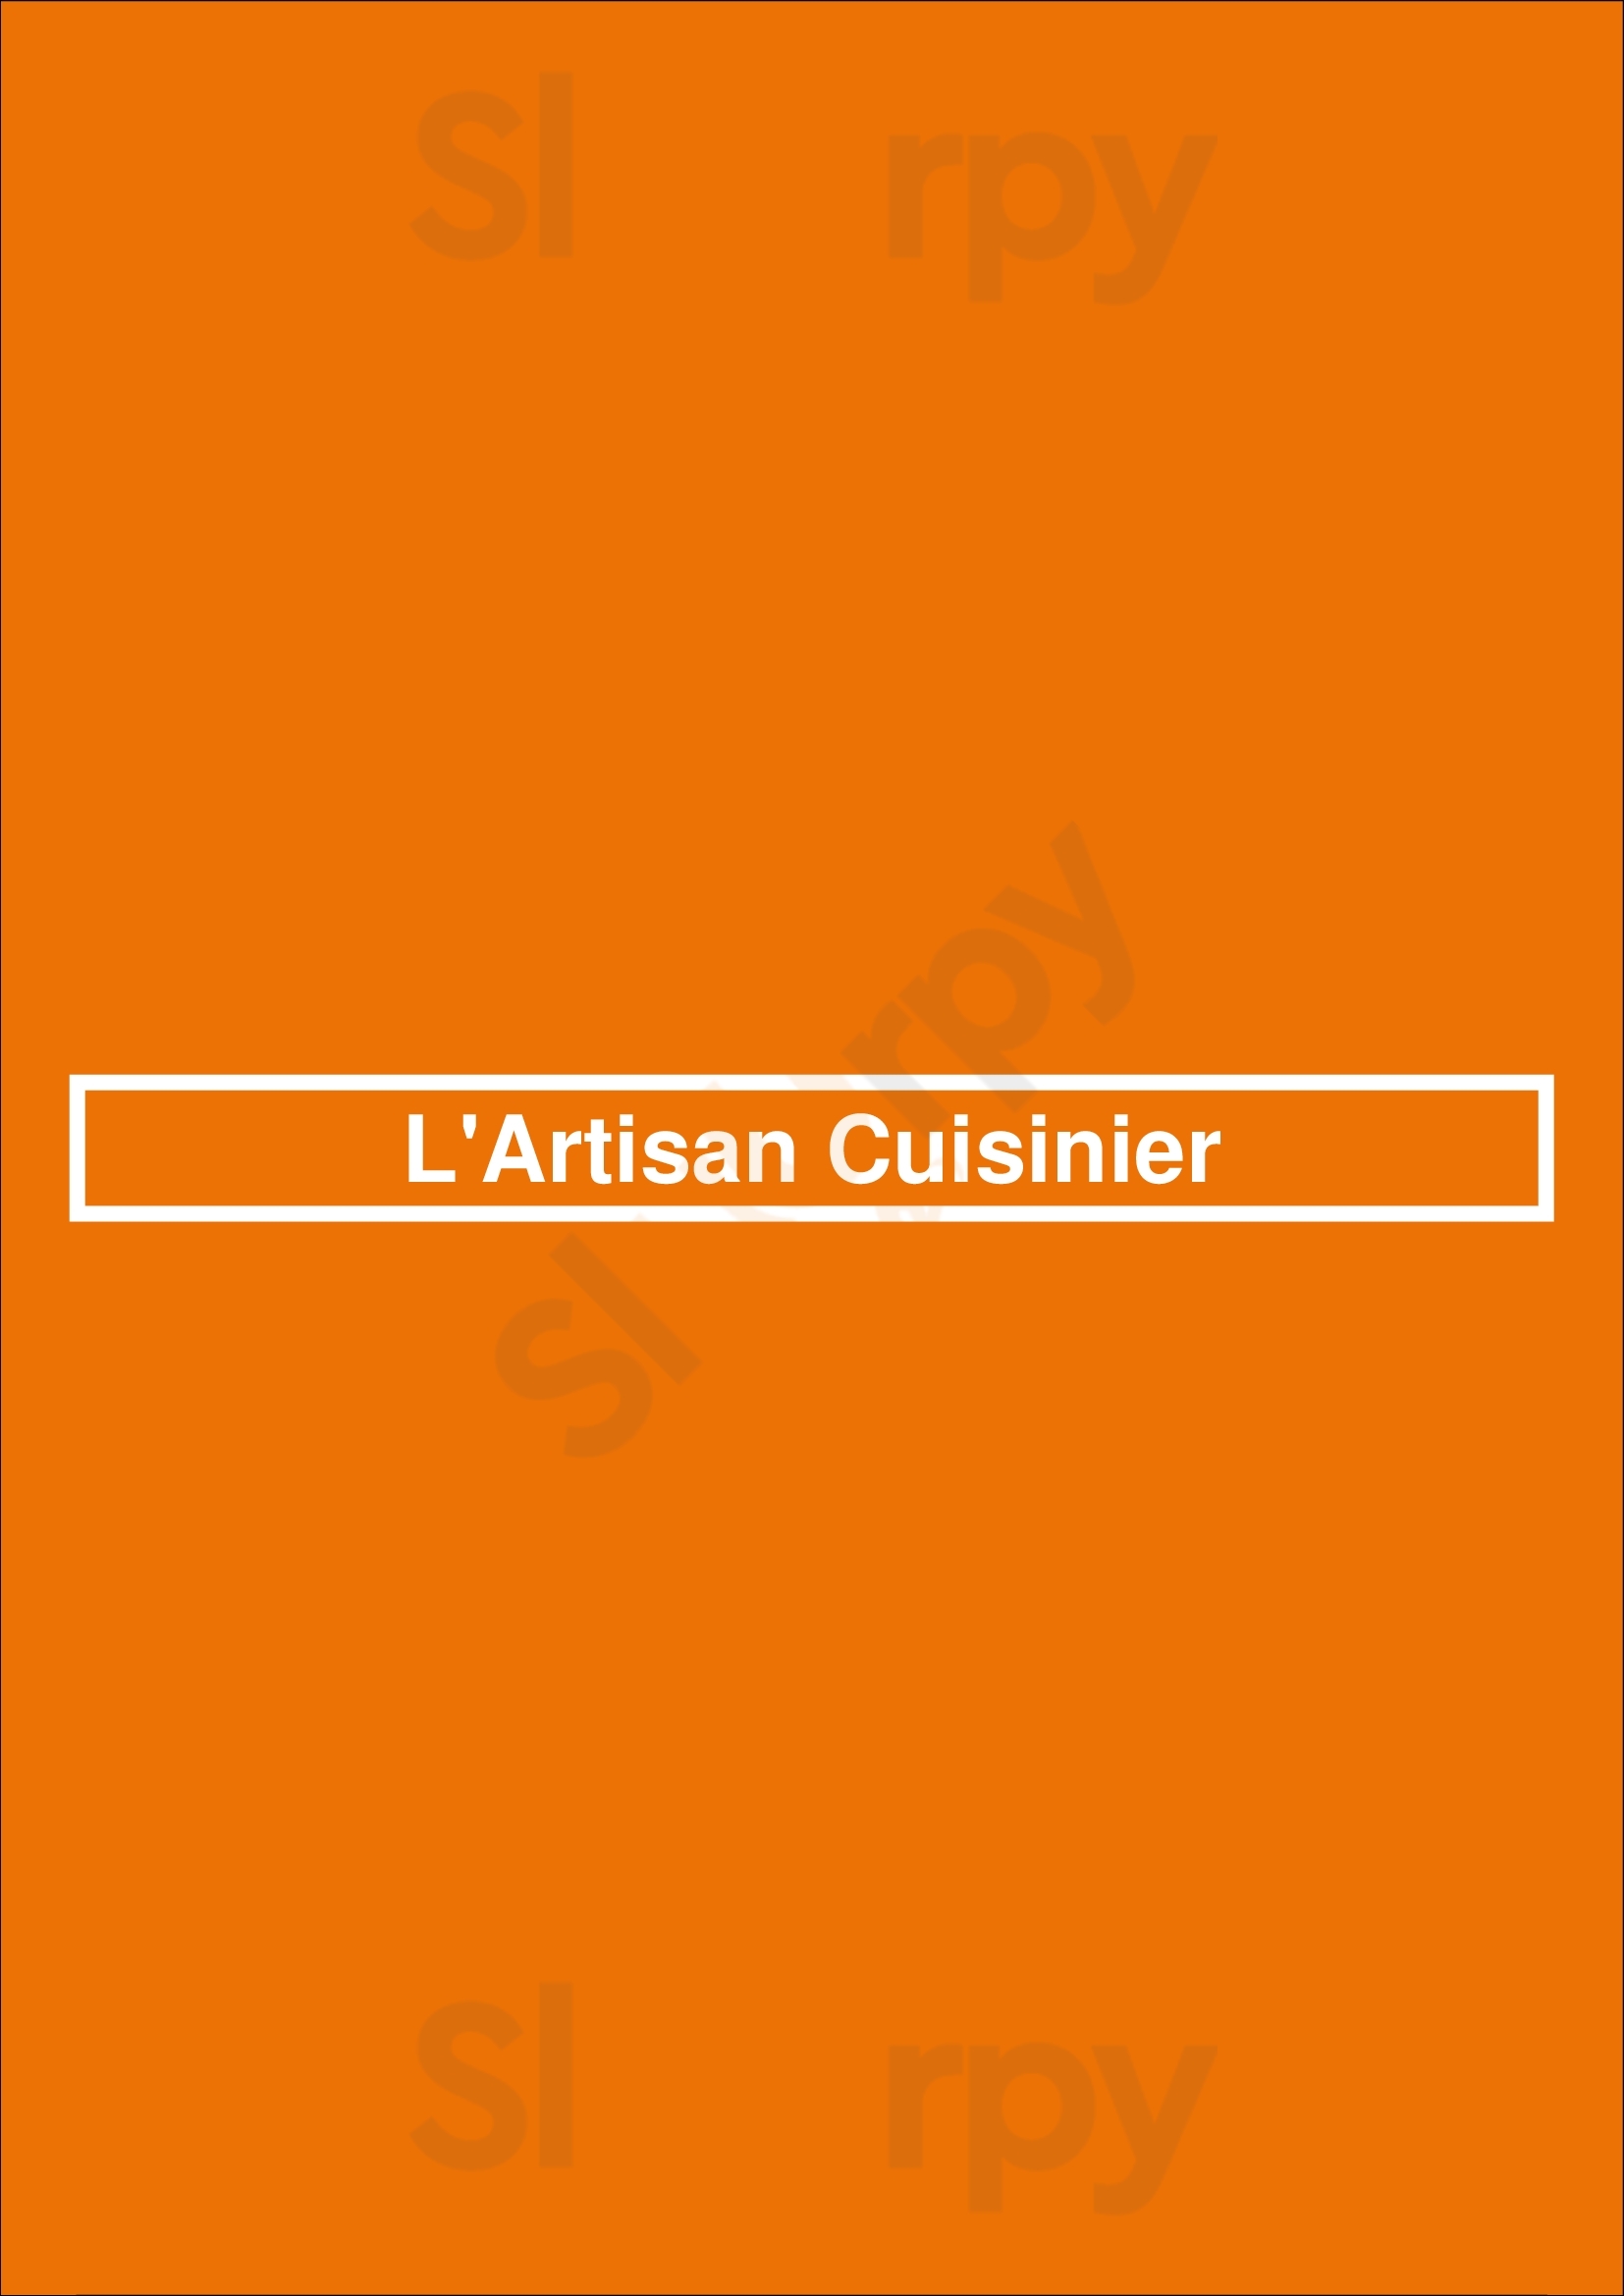 L'artisan Cuisinier Lyon Menu - 1